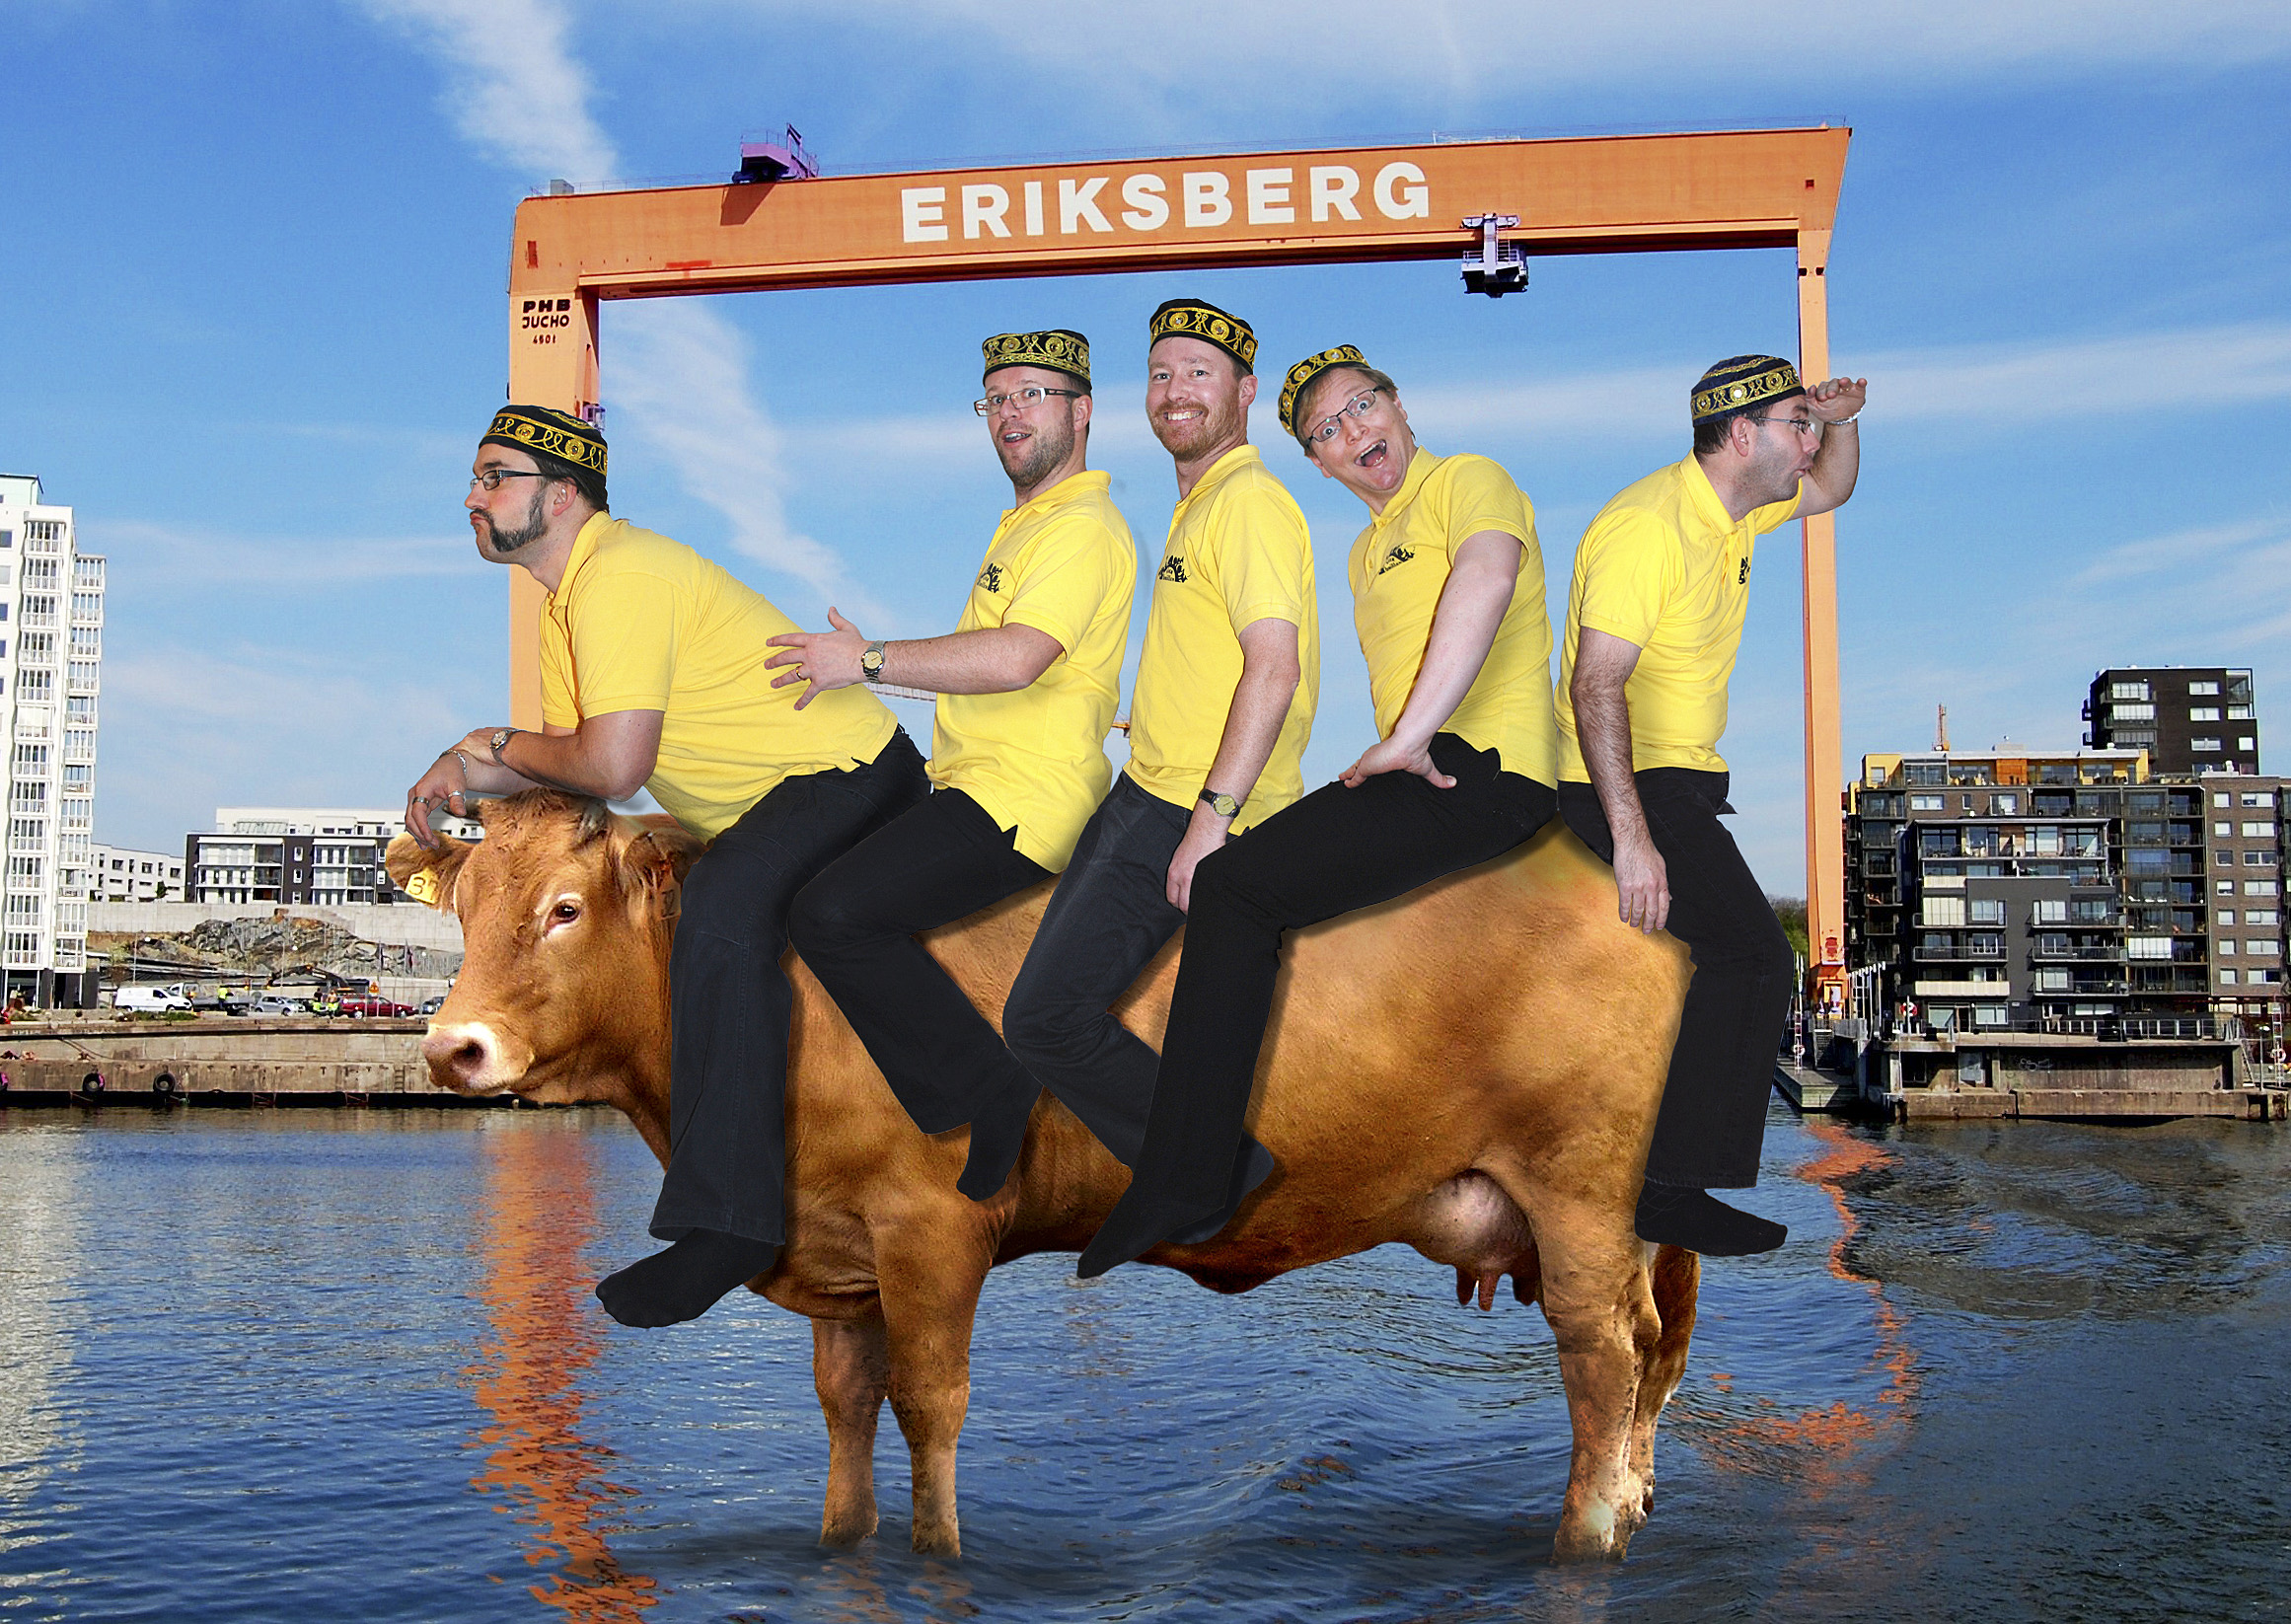 Fem manligt kodade personer sitter på en ko framför Eriksbergskranen. De har på sig gula pikétröjor, svarta byxor och svarta kufi-hattar.